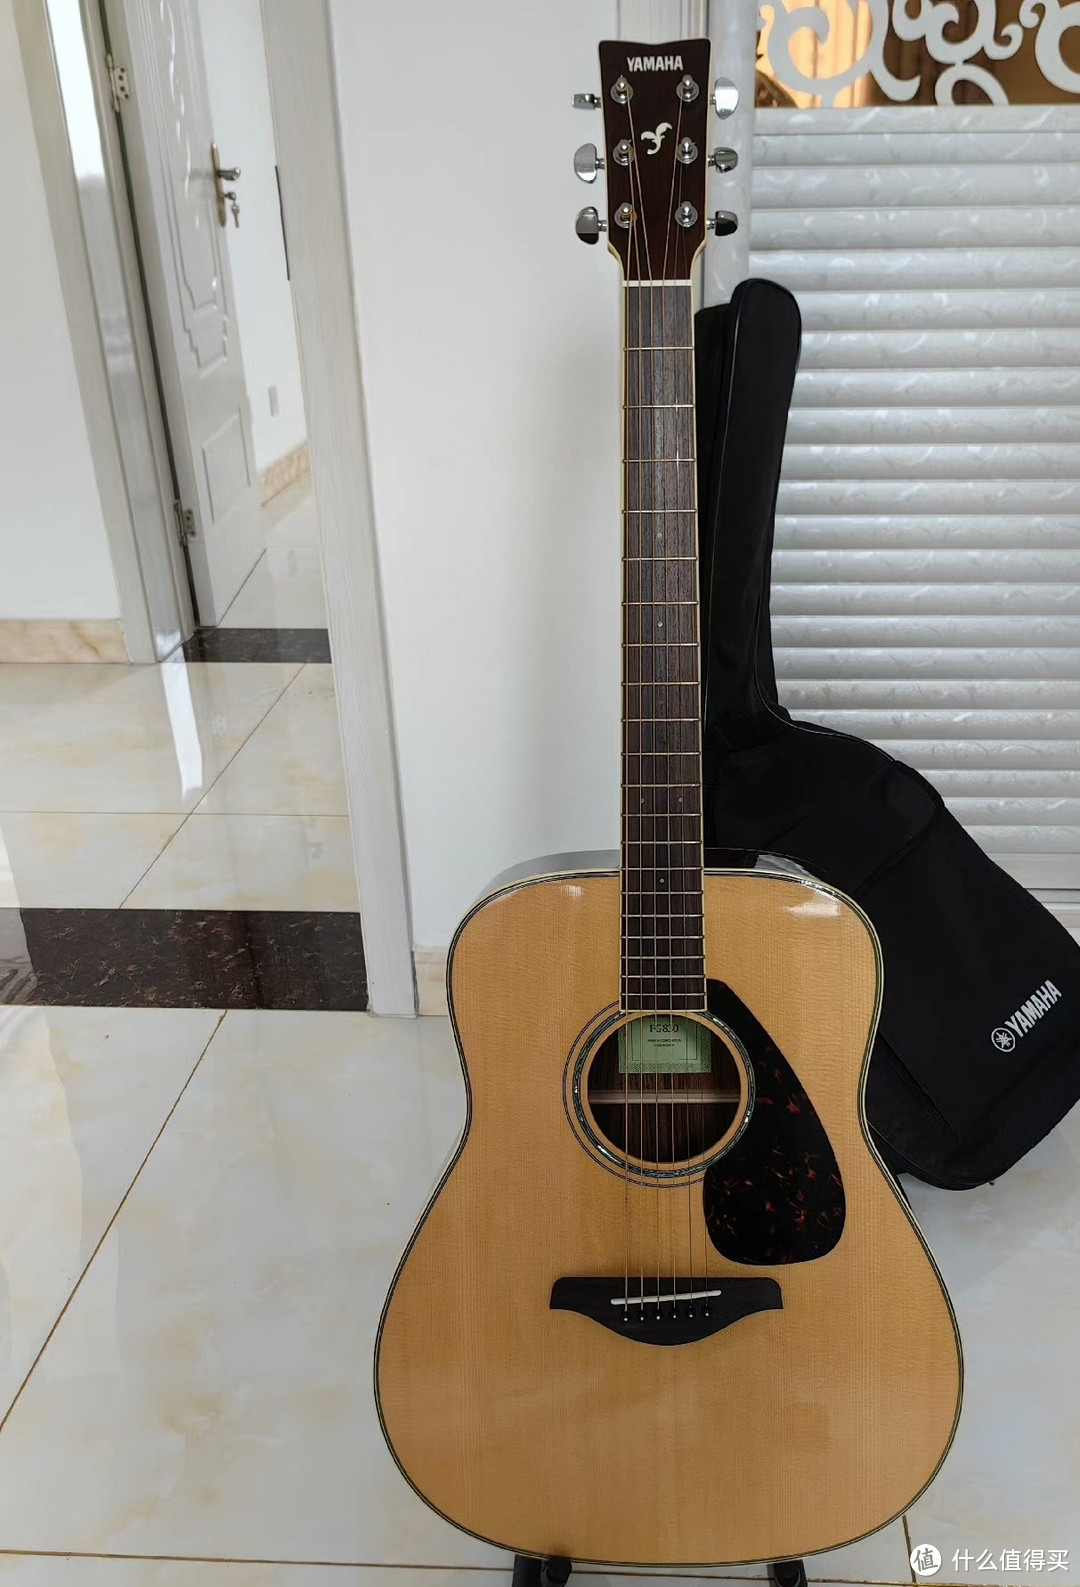 心心念念的吉他，终于买了。